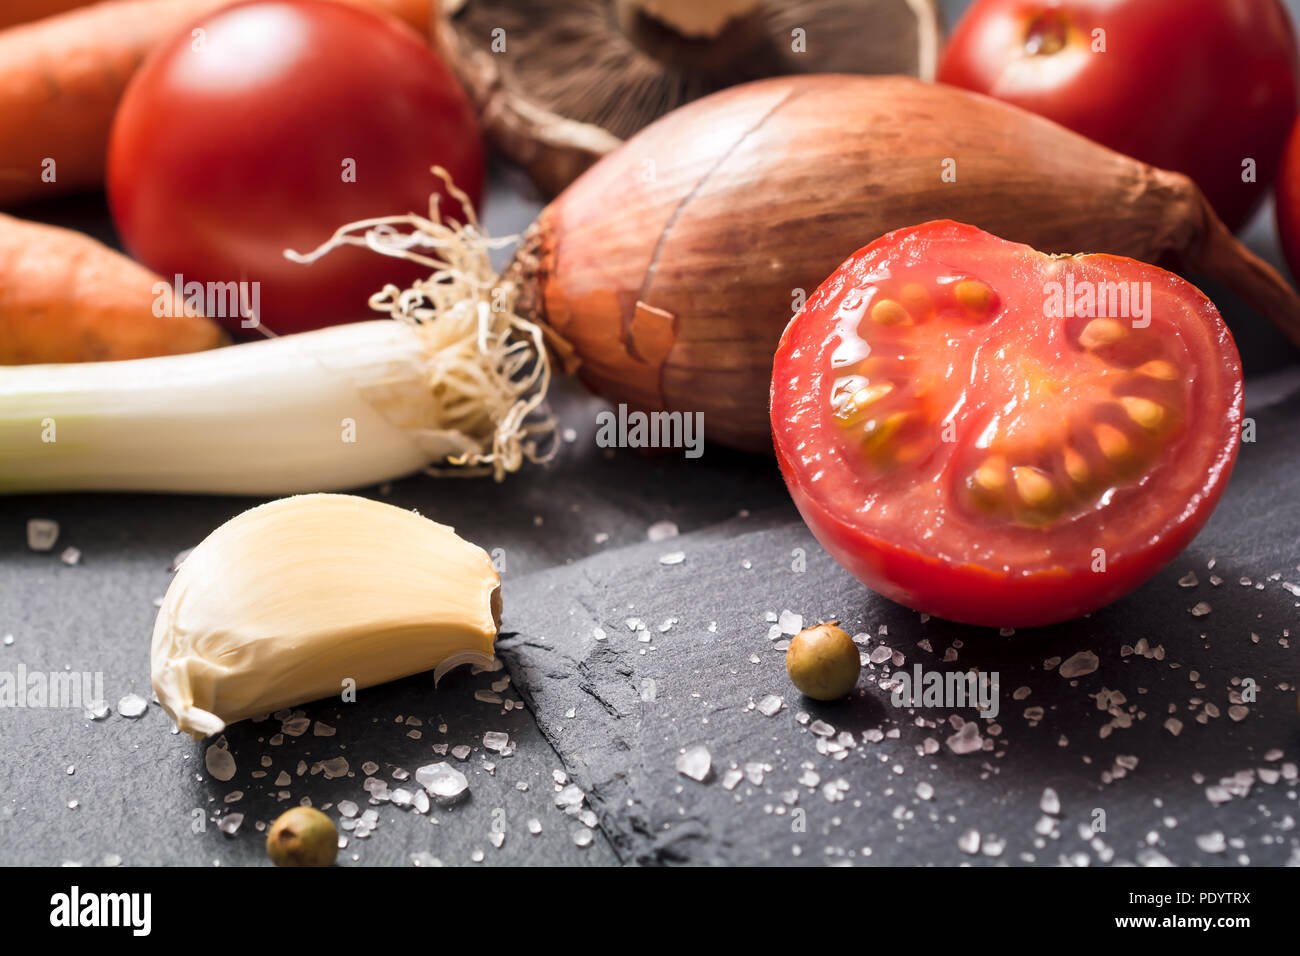 Ingrédients de cuisine comme les tomates, l'ail, l'oignon ou d'épices sur ardoise Banque D'Images